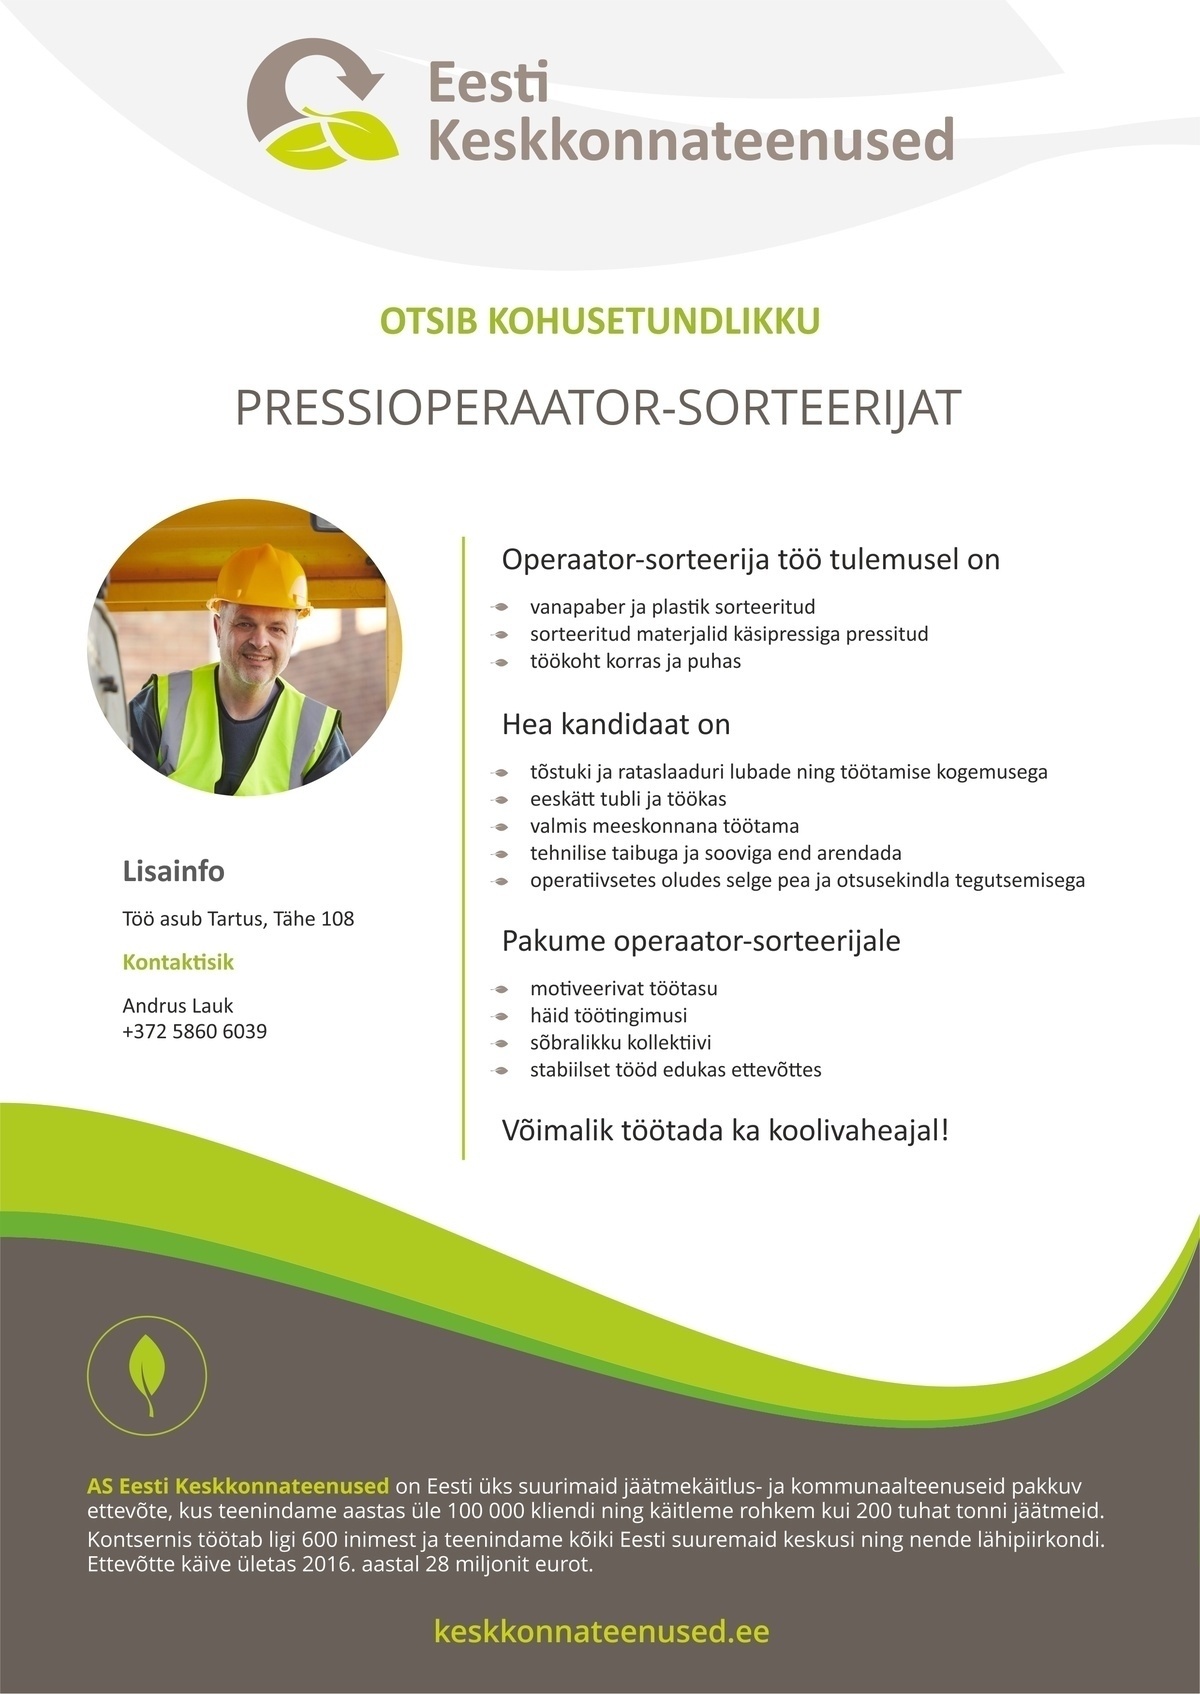 Eesti Keskkonnateenused AS Pressioperaator-sorteerija